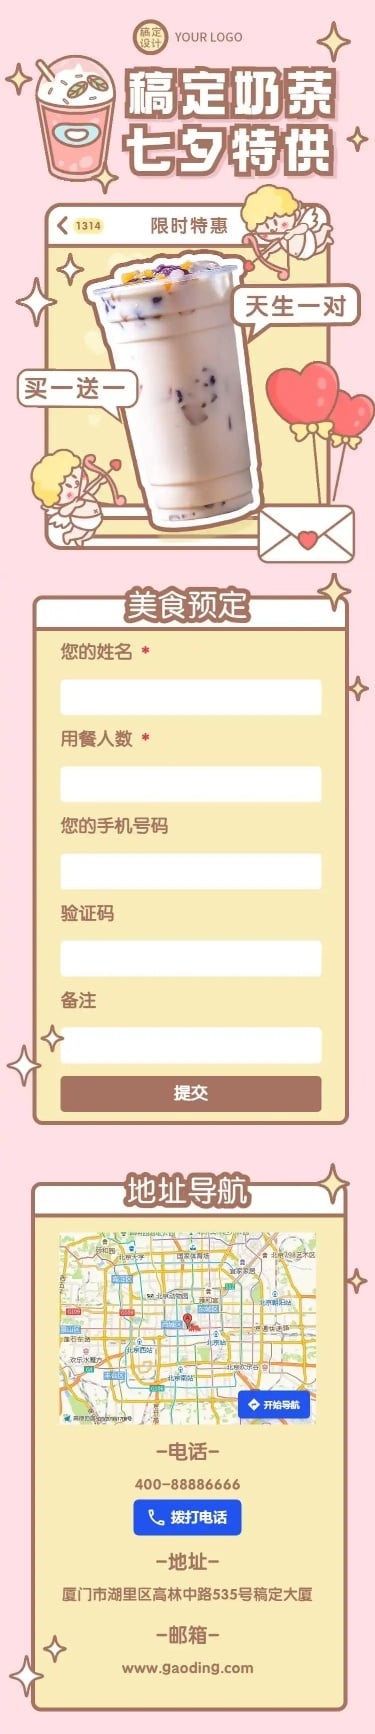 H5长页七夕节日限定奶茶特供新品饮品宣传营销